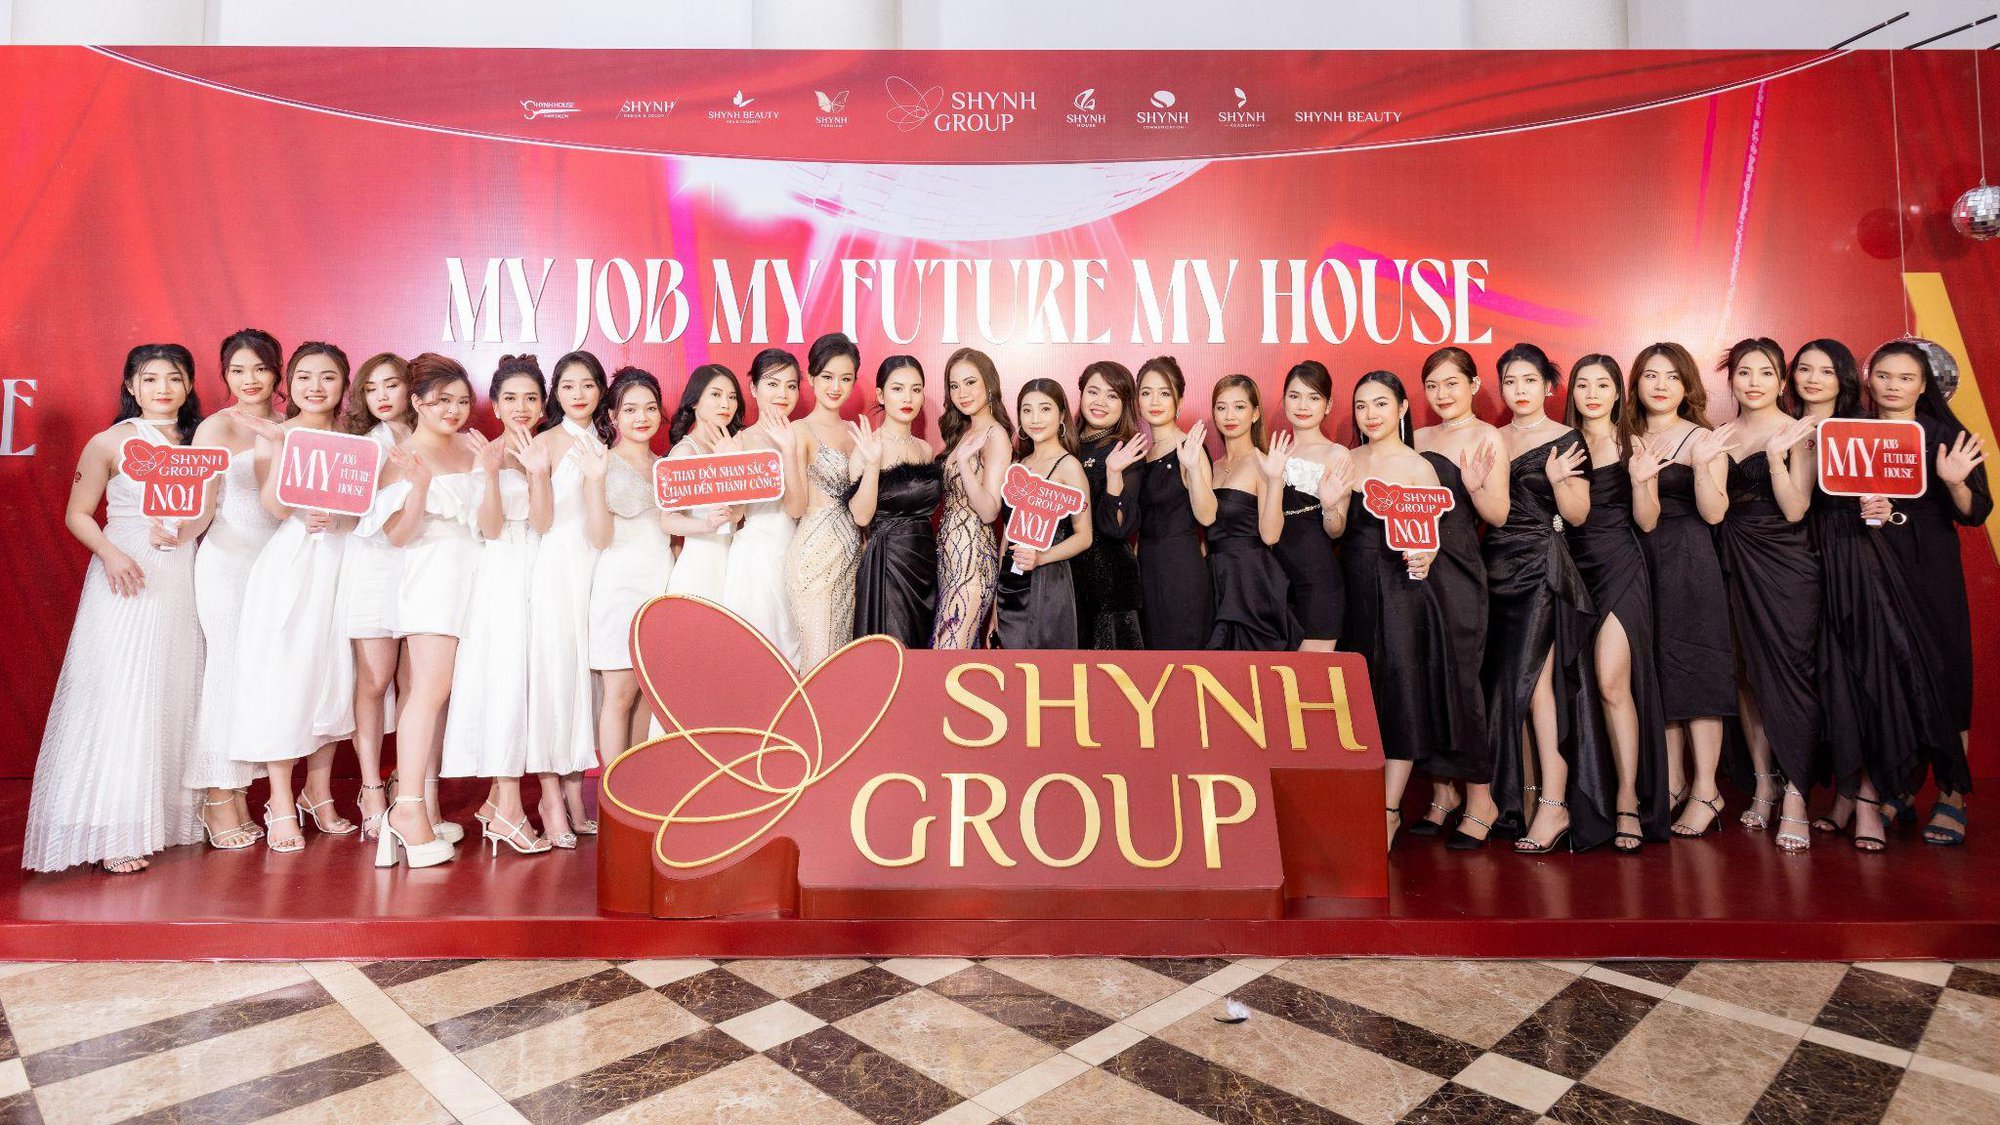 Shynh Group tổ chức tiệc tân niên, kỷ niệm gần 1 thập kỷ hình thành và phát triển - Ảnh 2.